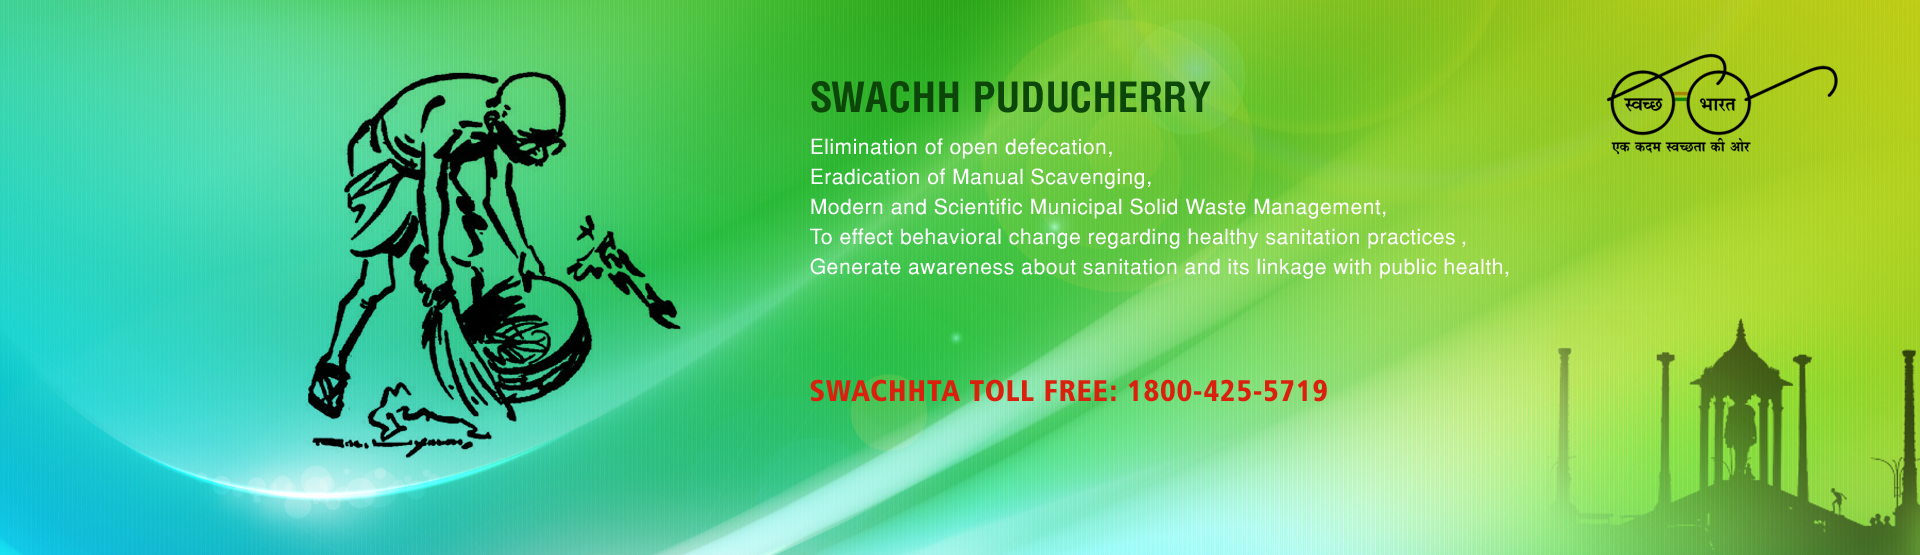 Swachh Puducherry